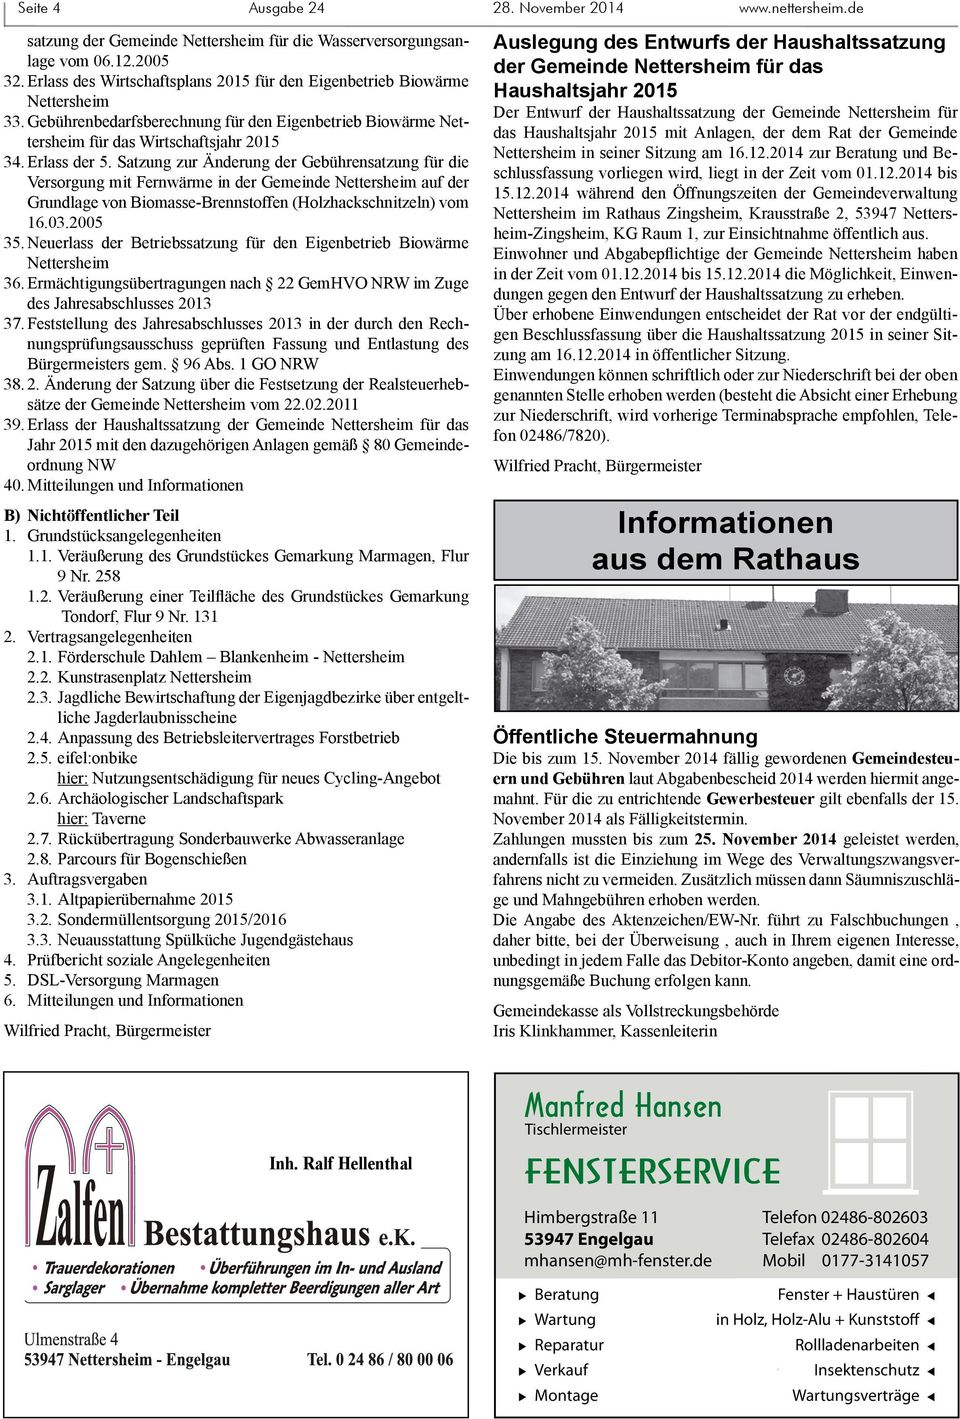 Satzung zur Änderung der Gebührensatzung für die Versorgung mit Fernwärme in der Gemeinde Nettersheim auf der Grundlage von Biomasse-Brennstoffen (Holzhackschnitzeln) vom 16.03.2005 35.